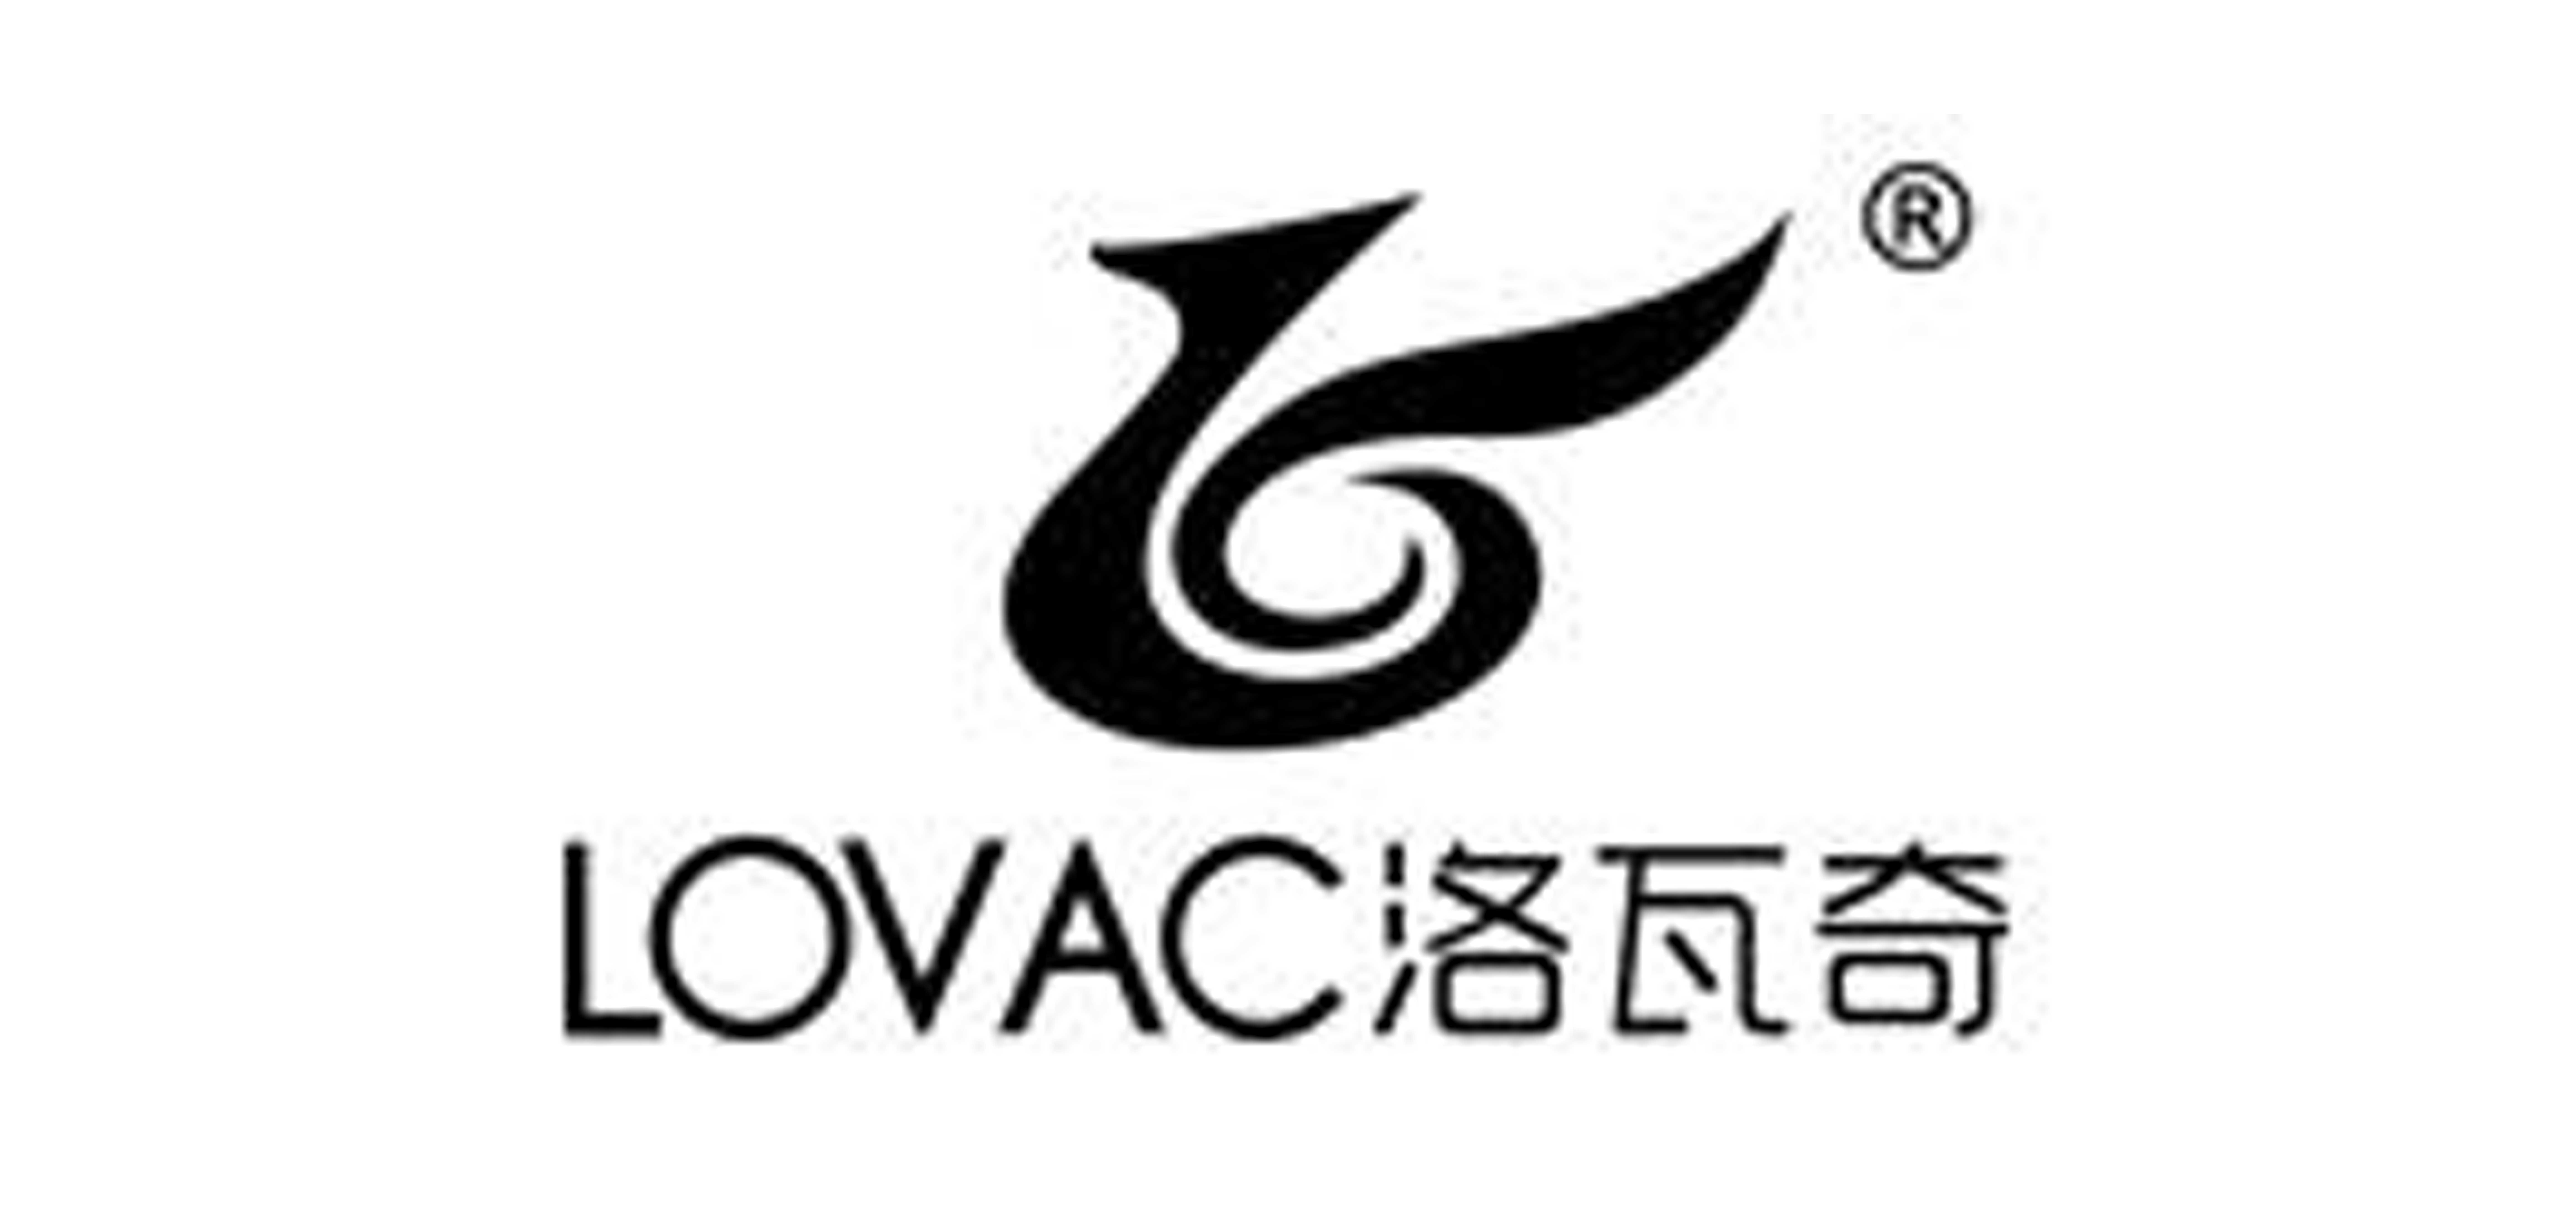 LOVAC是什么牌子_洛瓦奇品牌怎么样?